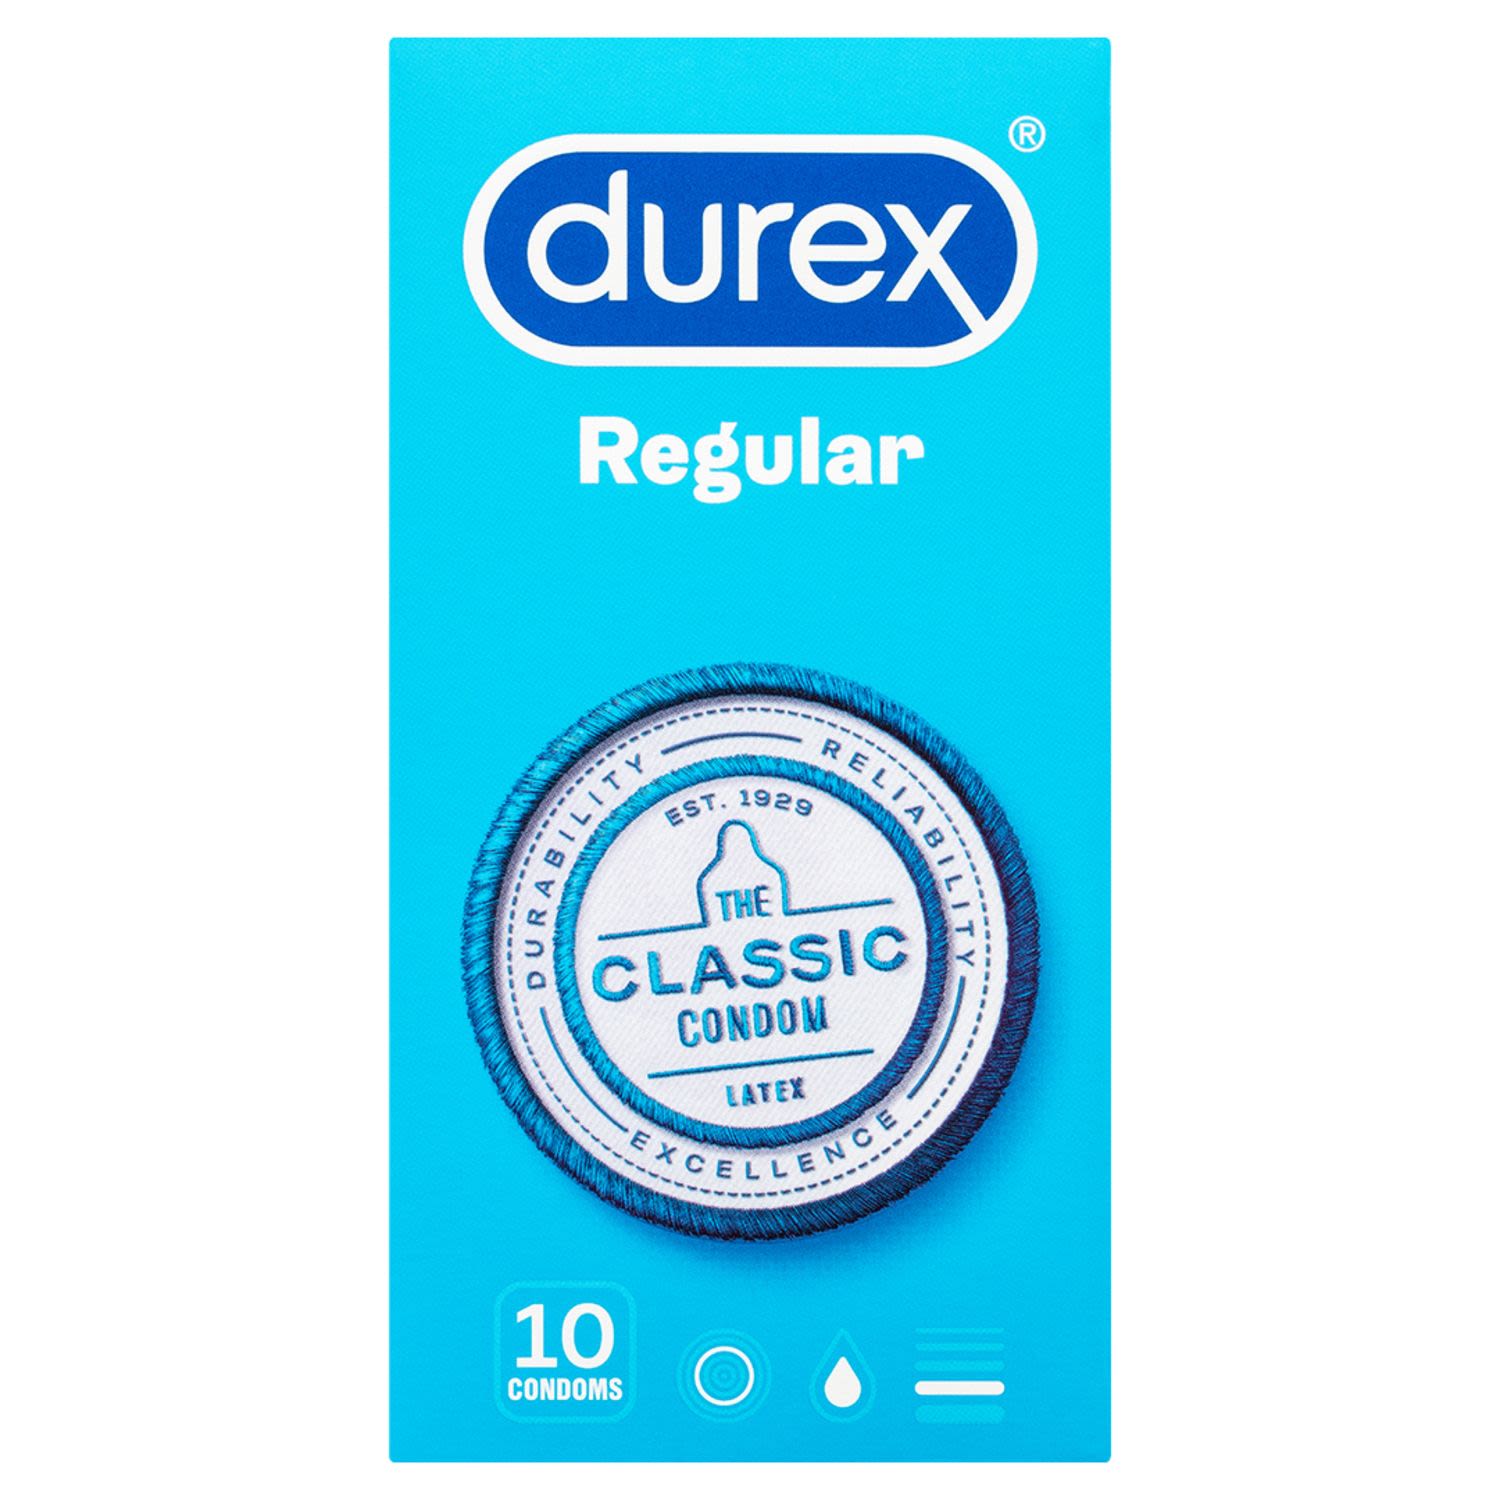 Durex Regular Condoms Original, 10 Each